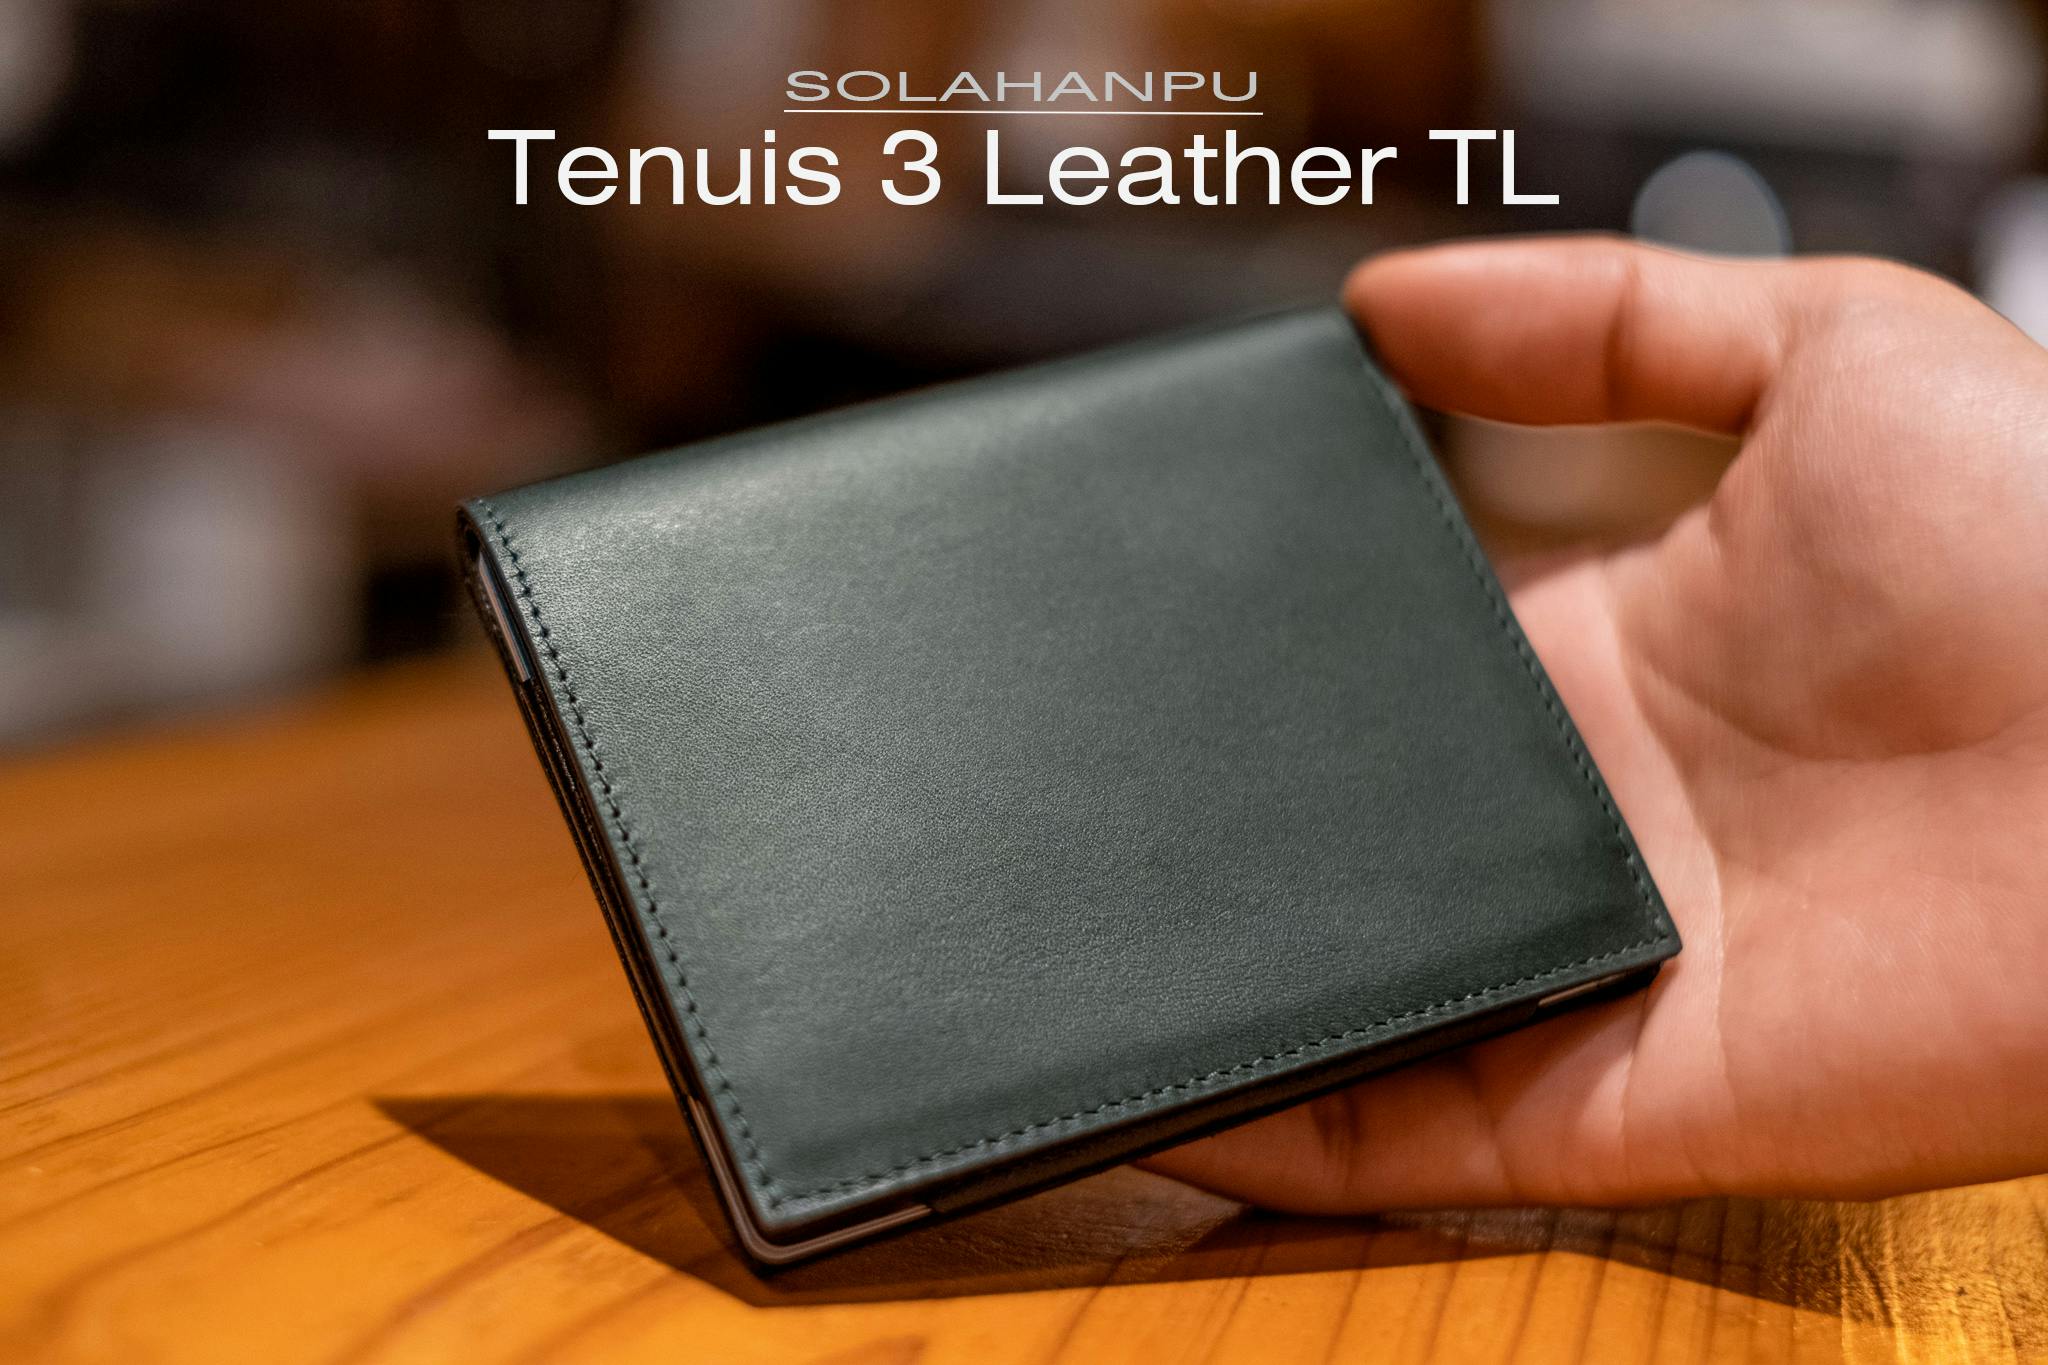 ファッション小物SOLAHANPU「Tenuis3 Leather TL」、期間限定クラウドファンディング ... 5170円